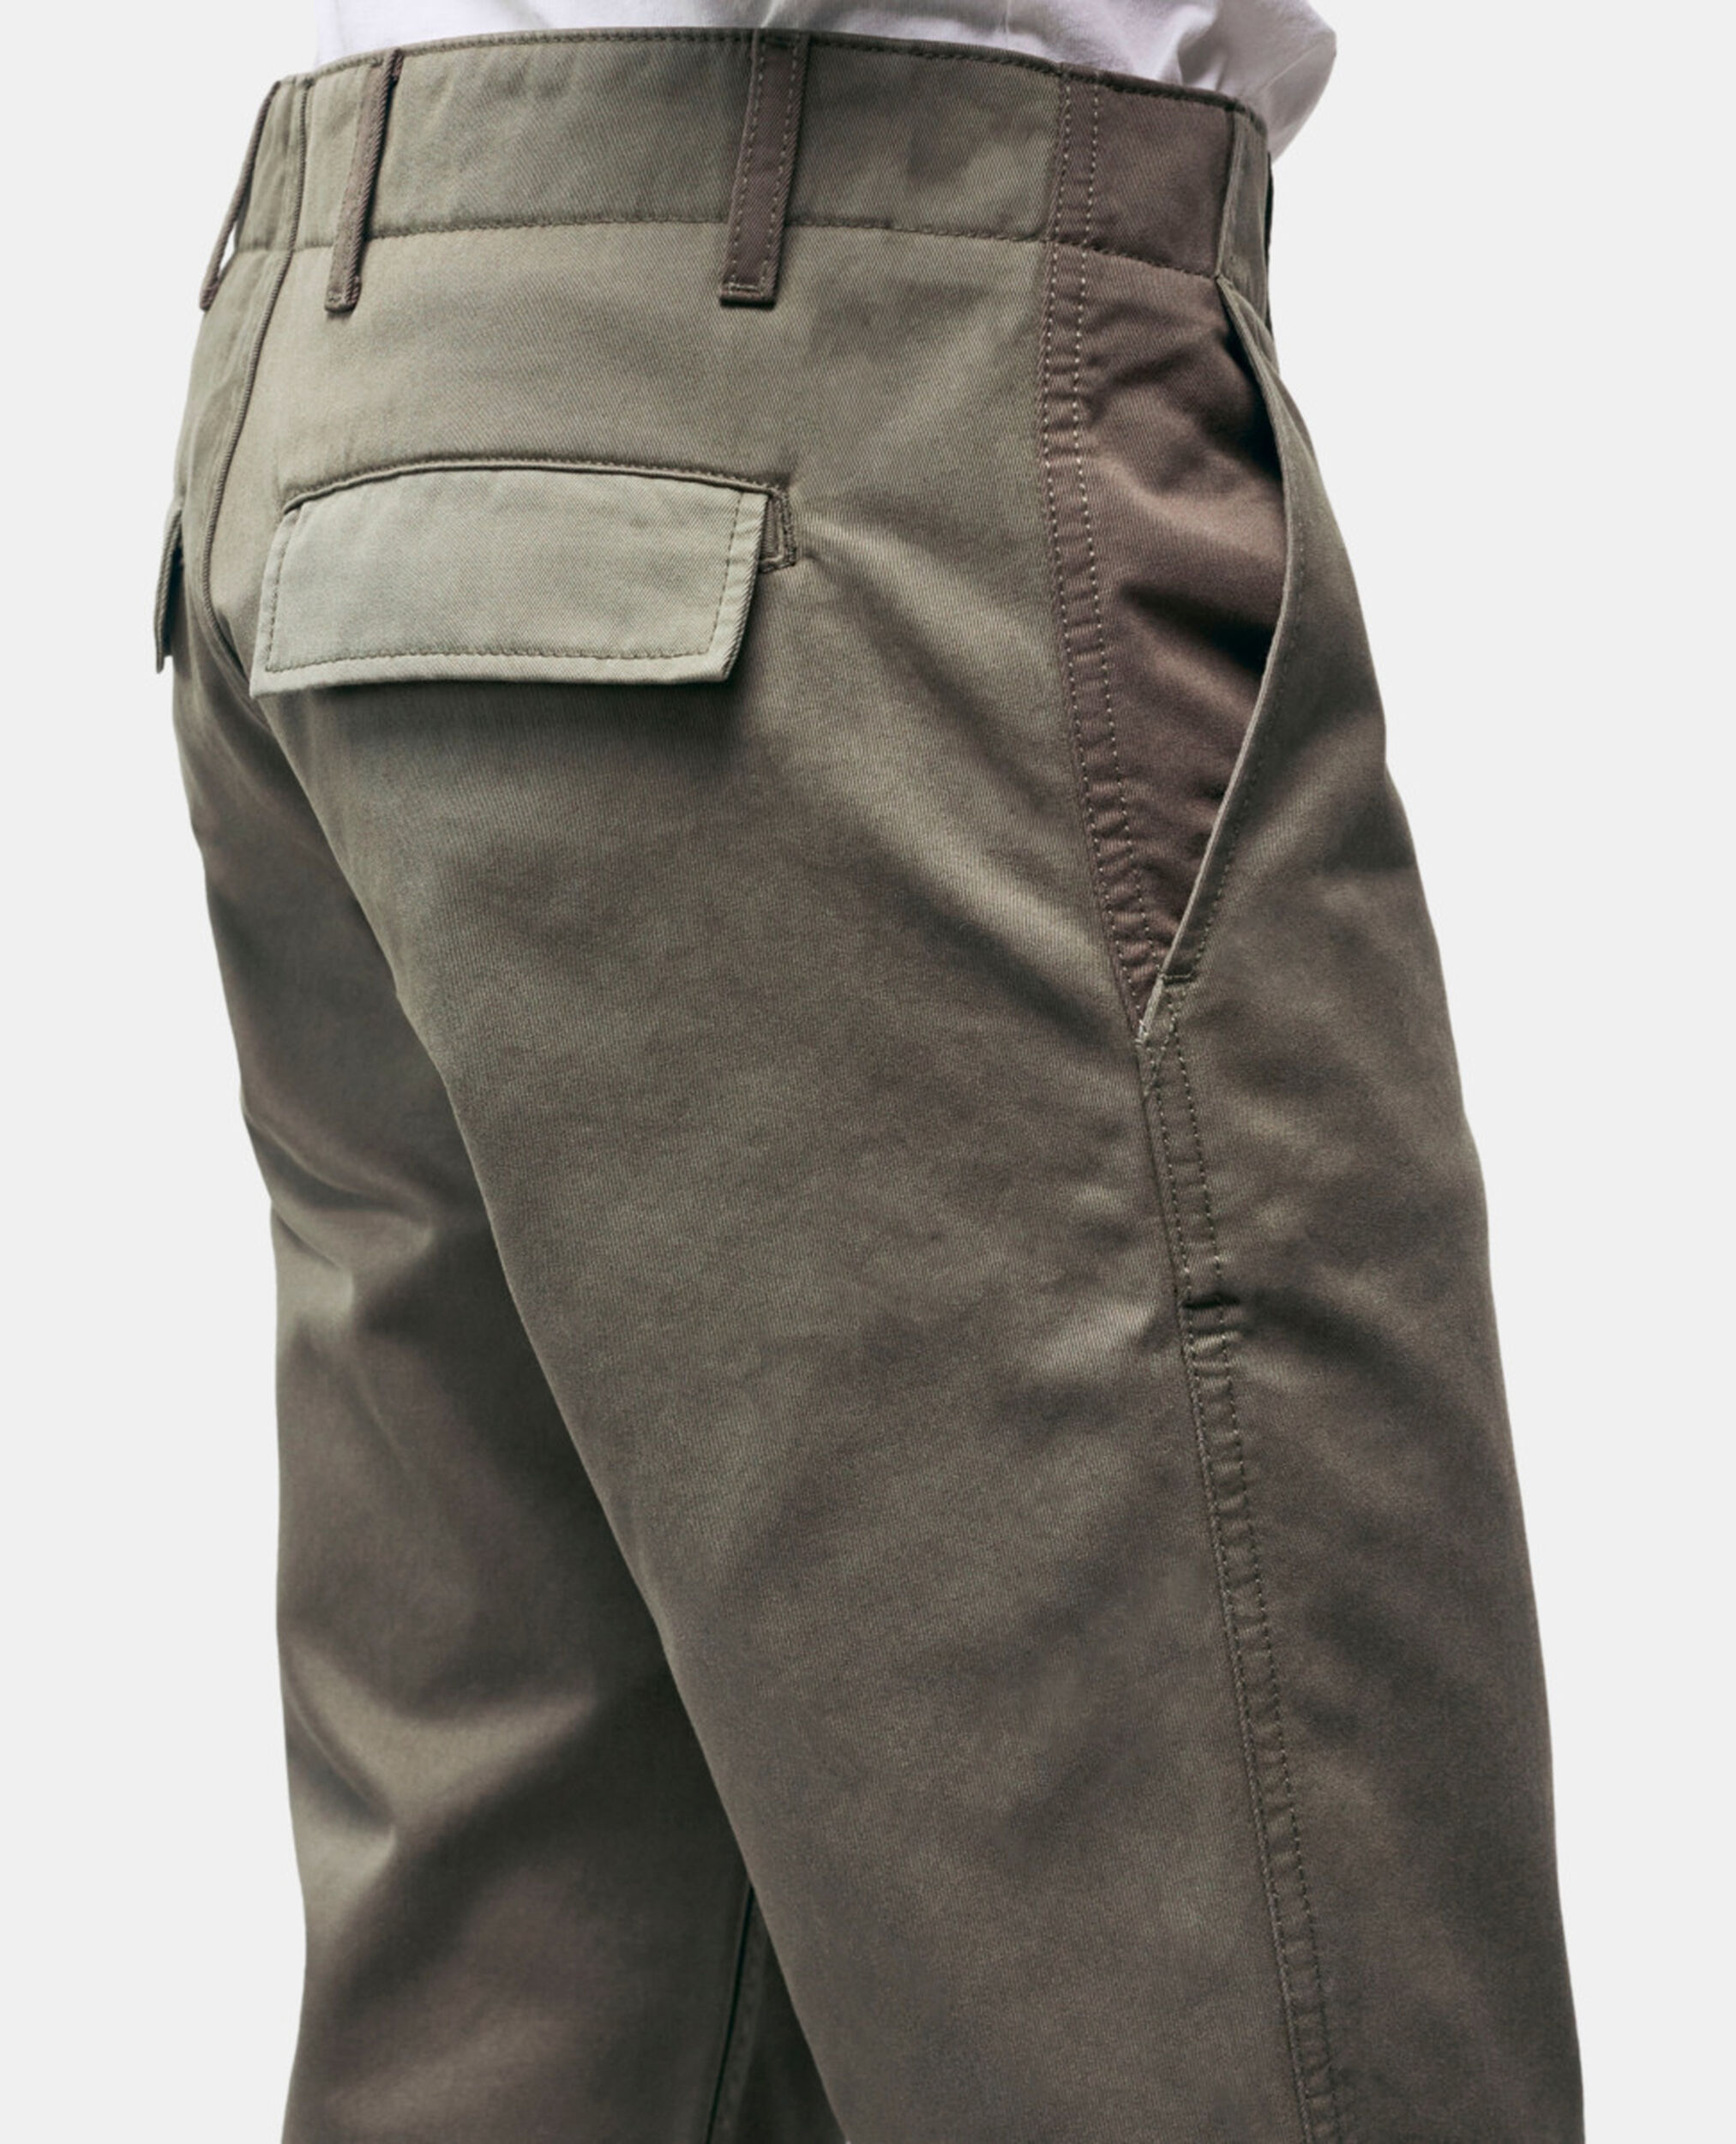 Pantalon droit patchwork kaki, OLIVE NIGHT, hi-res image number null